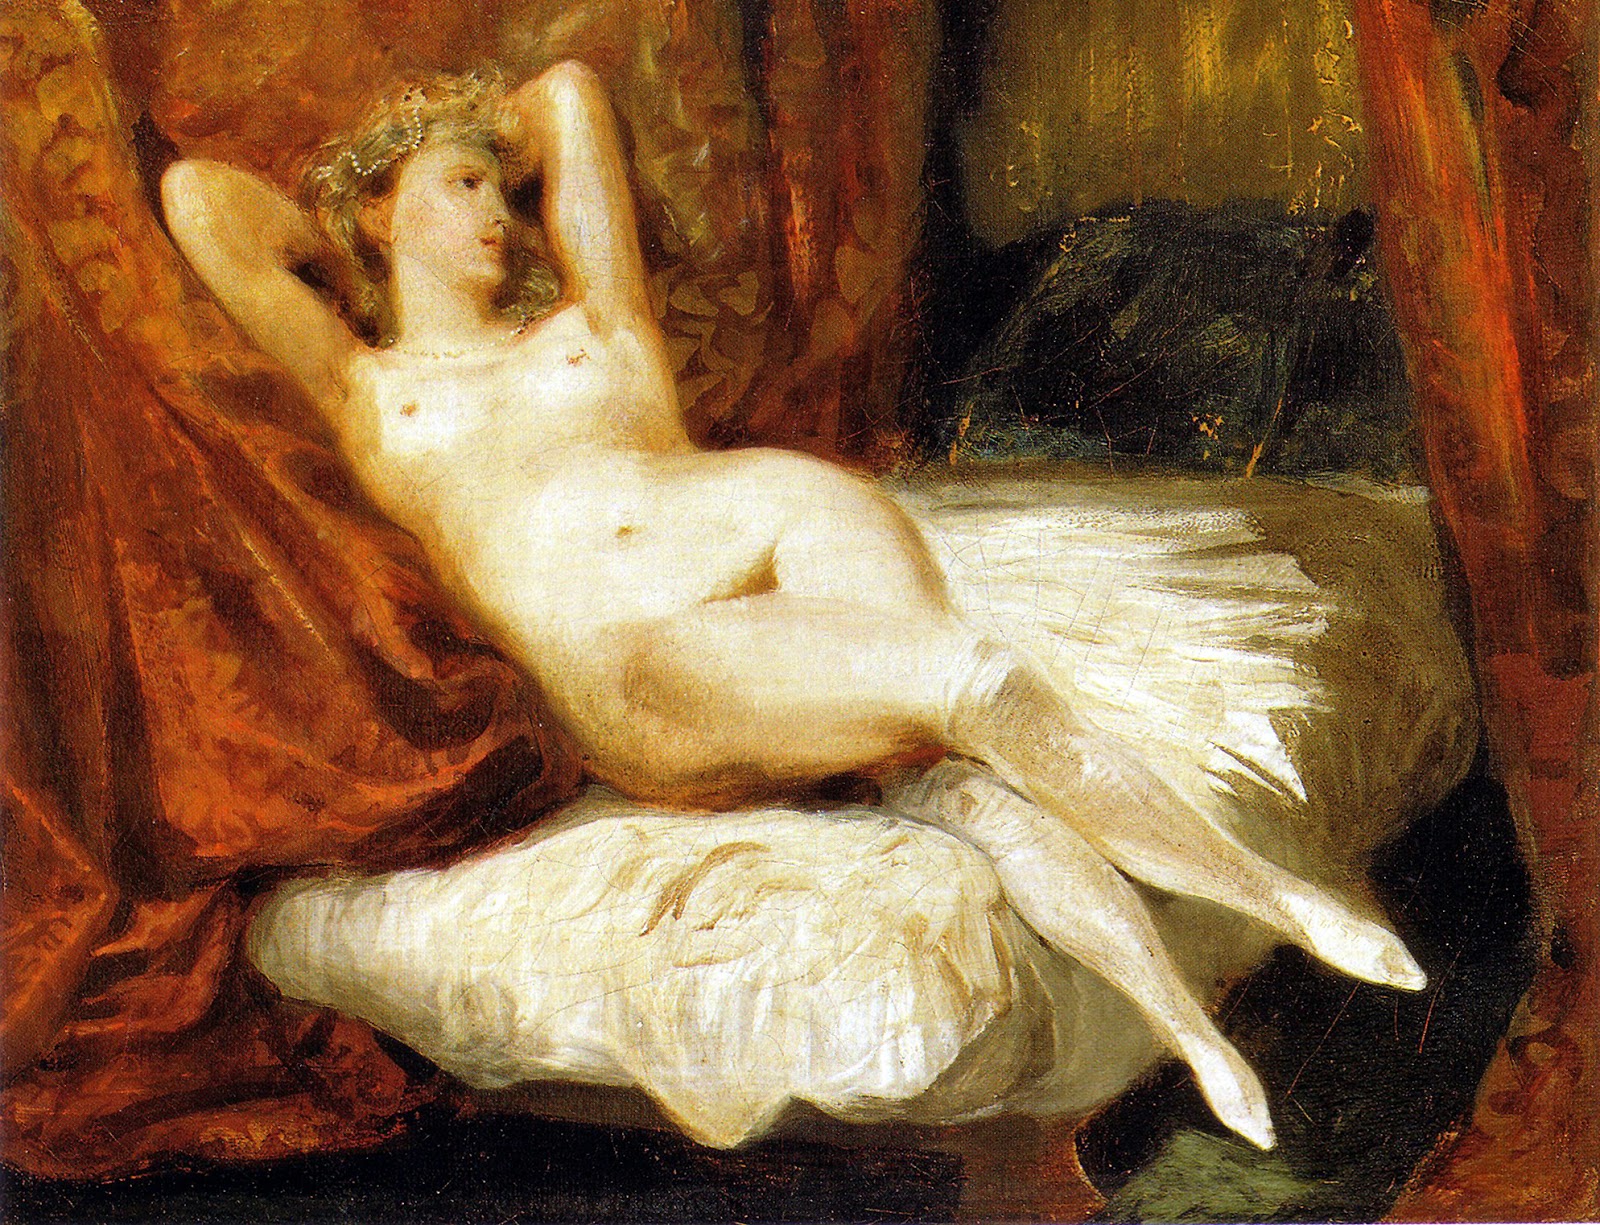 Eugene+Delacroix-1798-1863 (141).jpg